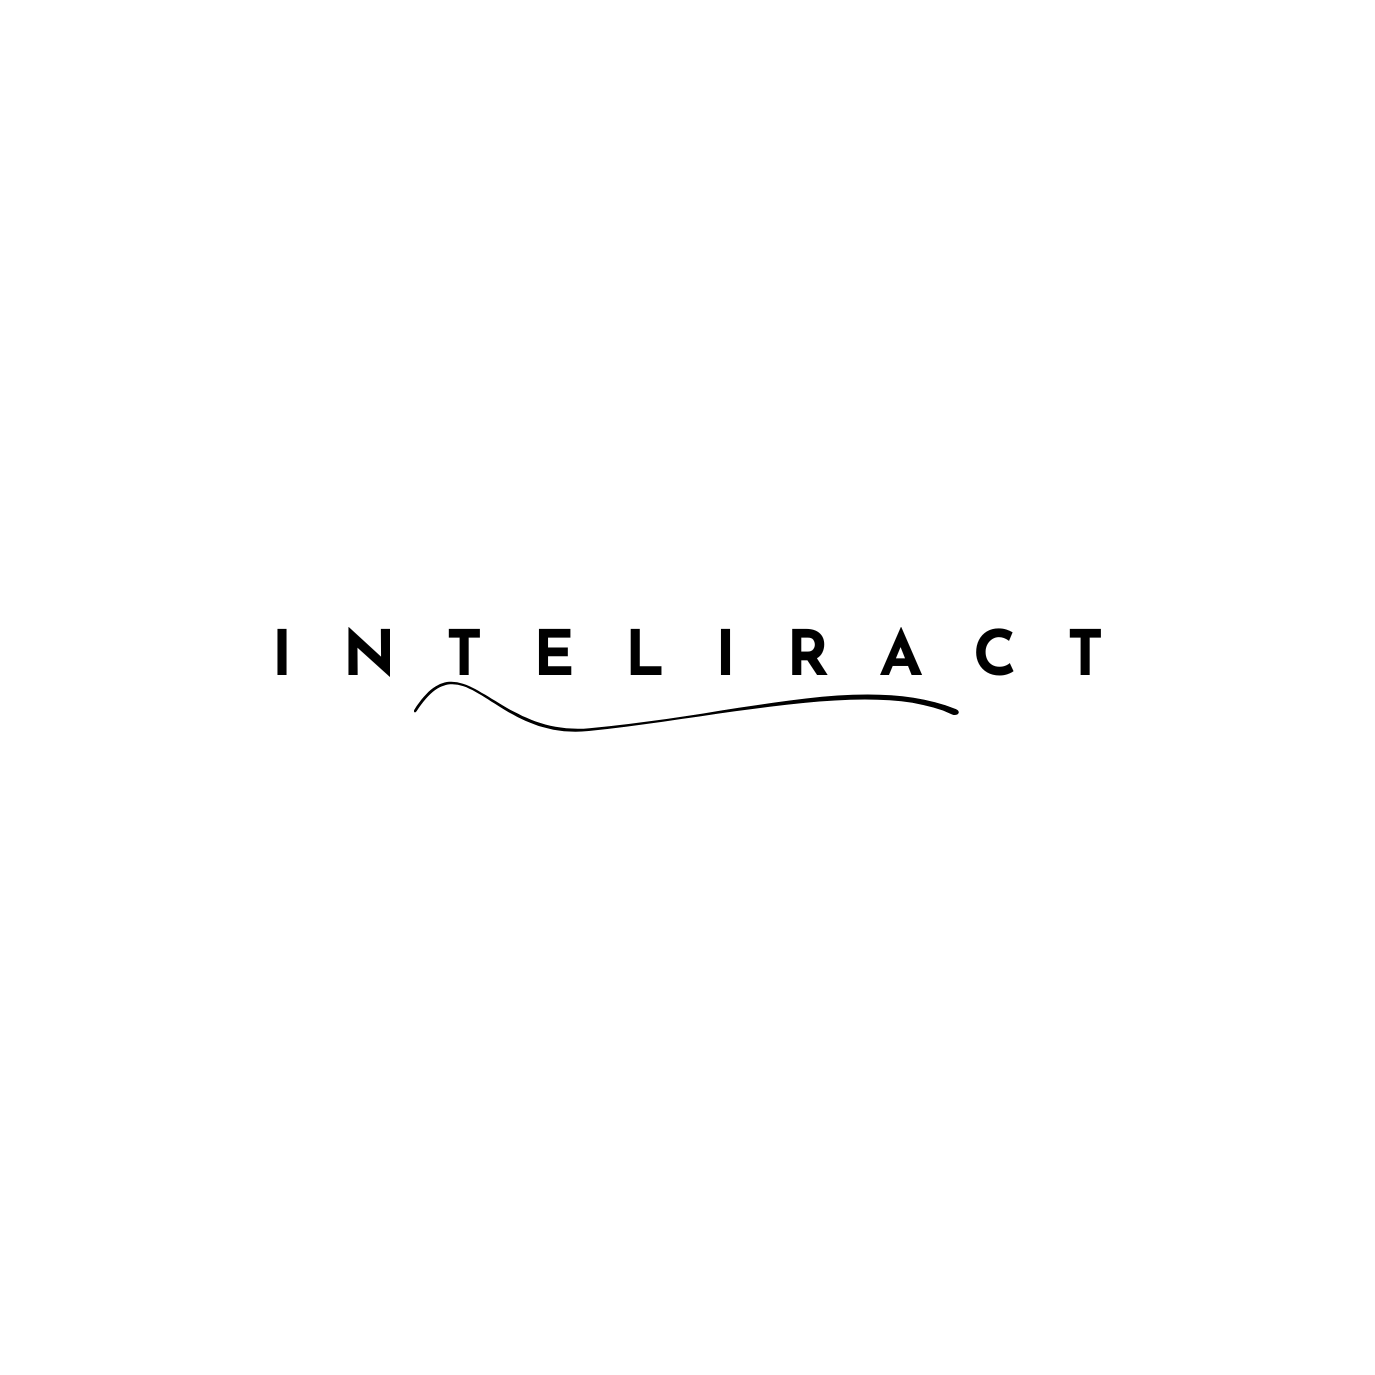 Inteliract